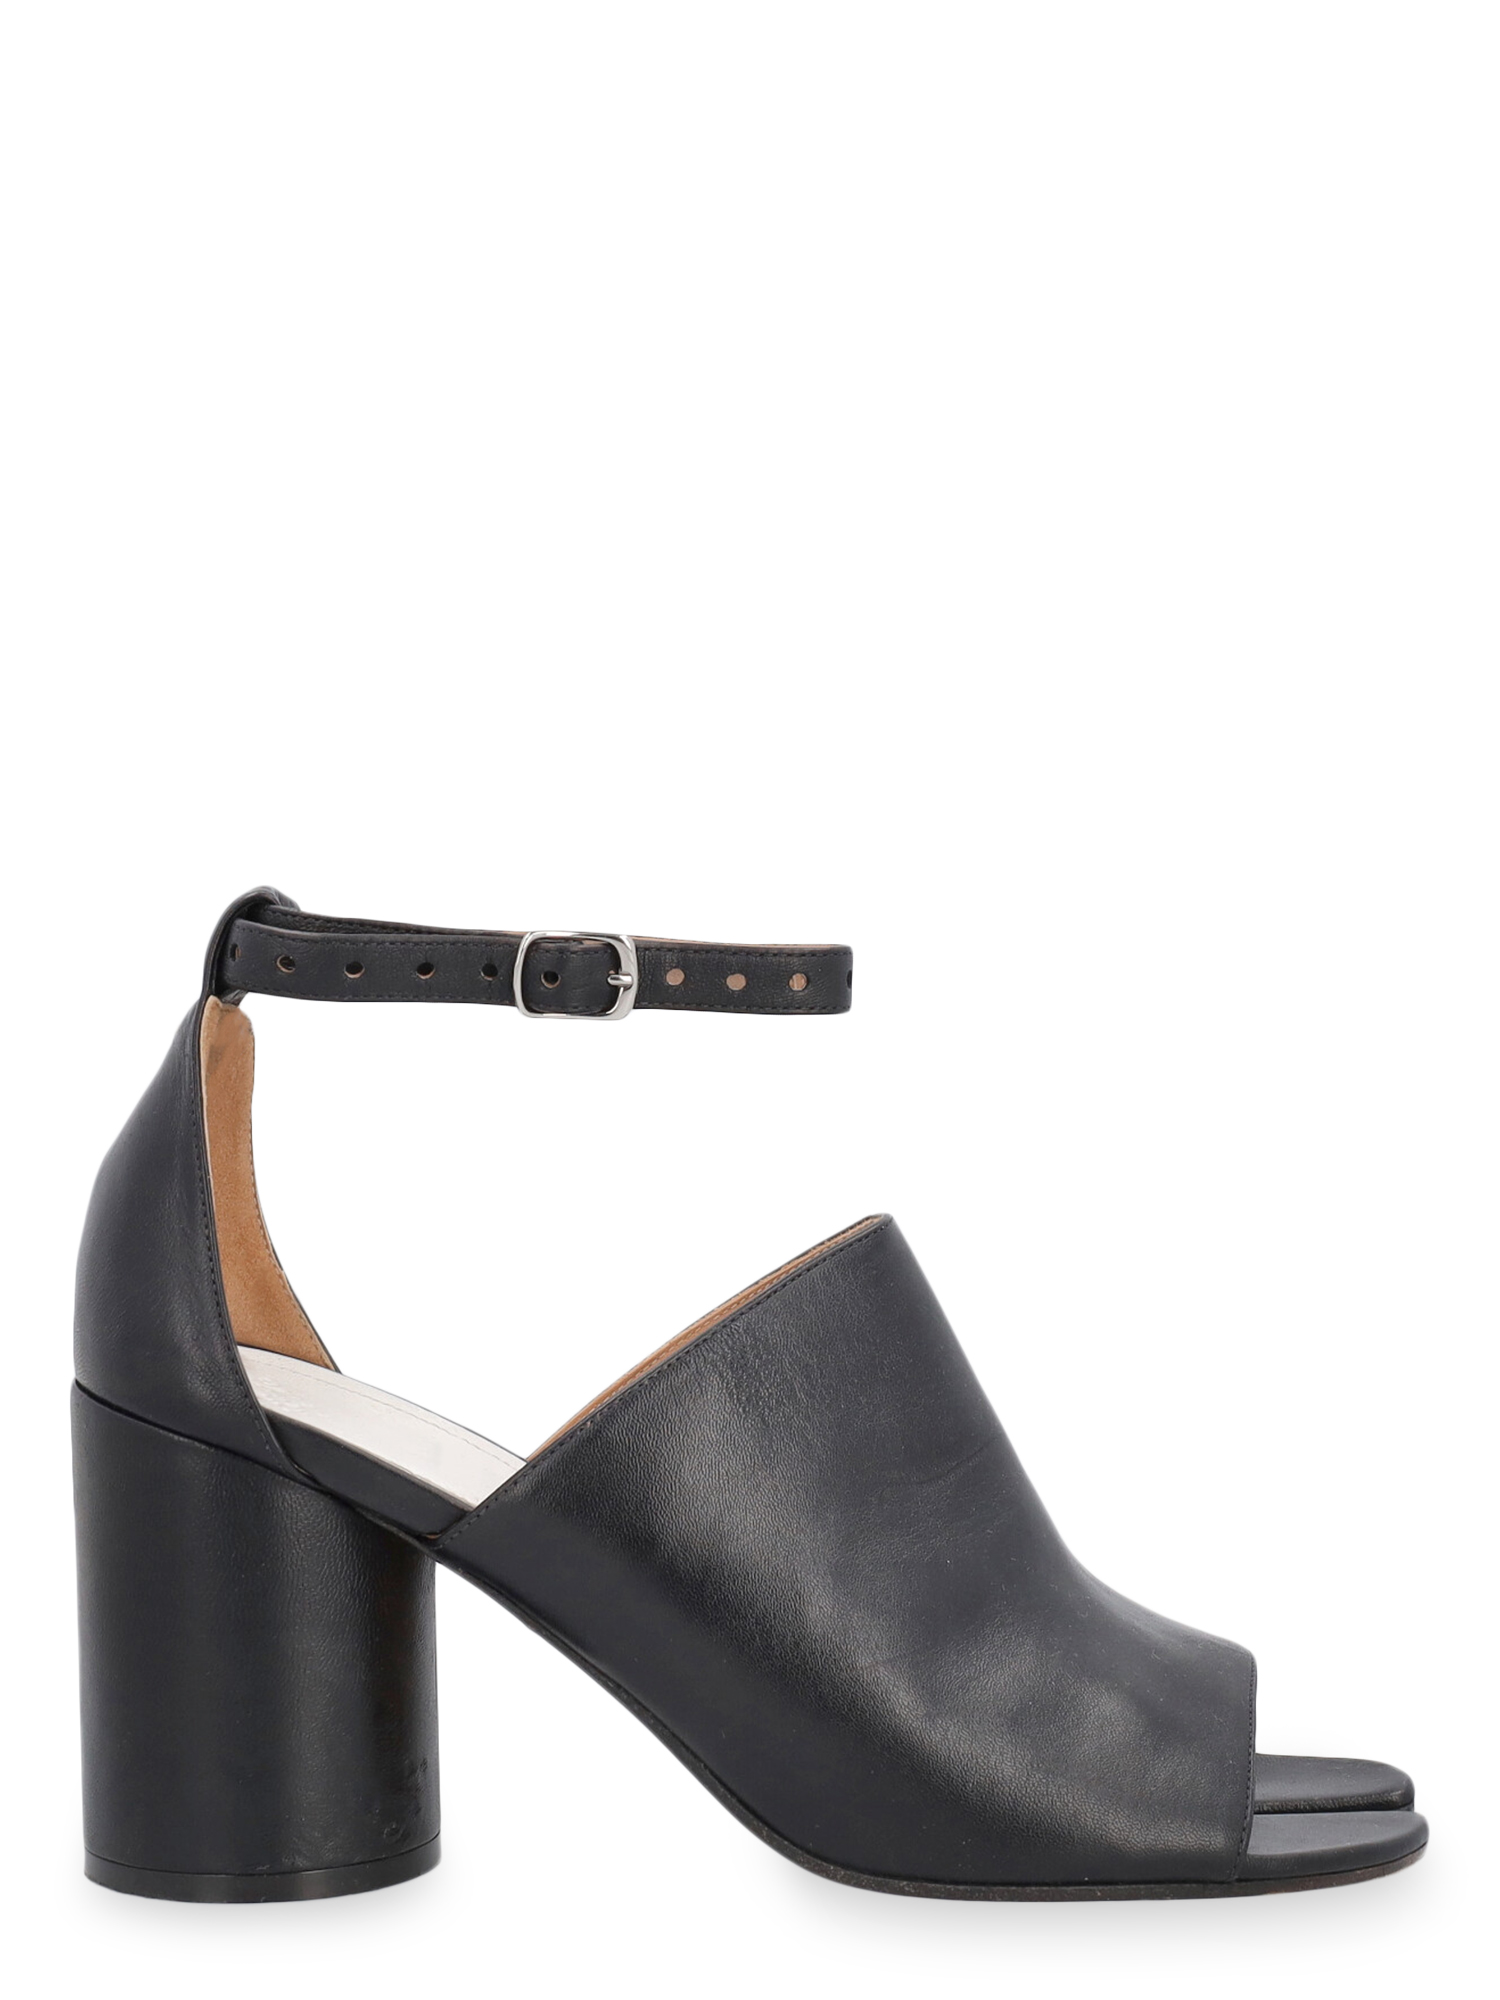 Sandales Pour Femme - Mm6 Maison Margiela - En Leather Black - Taille: IT 40.5 - EU 40